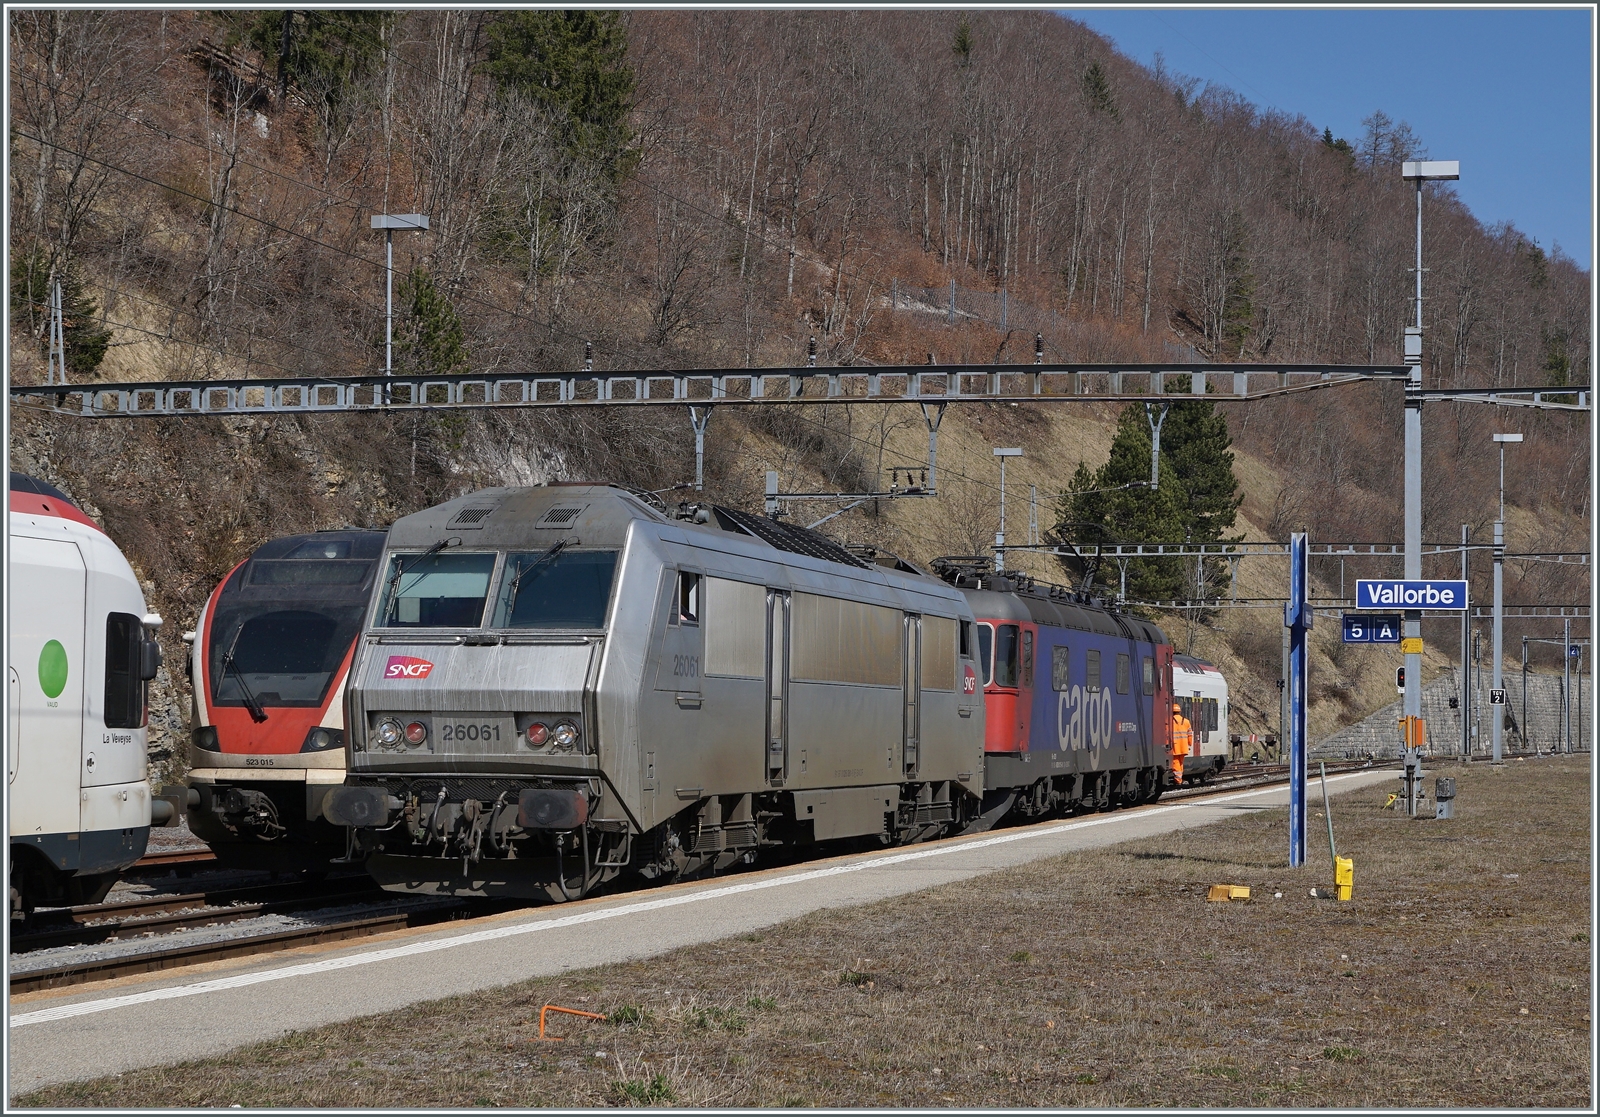 Jahre später begegnet mir die SNCF BB 26061 Sibic erneut, nun in einer anderen Farbgebung, hat sie (mit einer Schublok am Zugsende) den  Spaghetti  Zug nach Vallorbe gebracht, wo eine SBB Re 6/6 die Traktion bis Domo II übernehmen wird.

24. März 2022